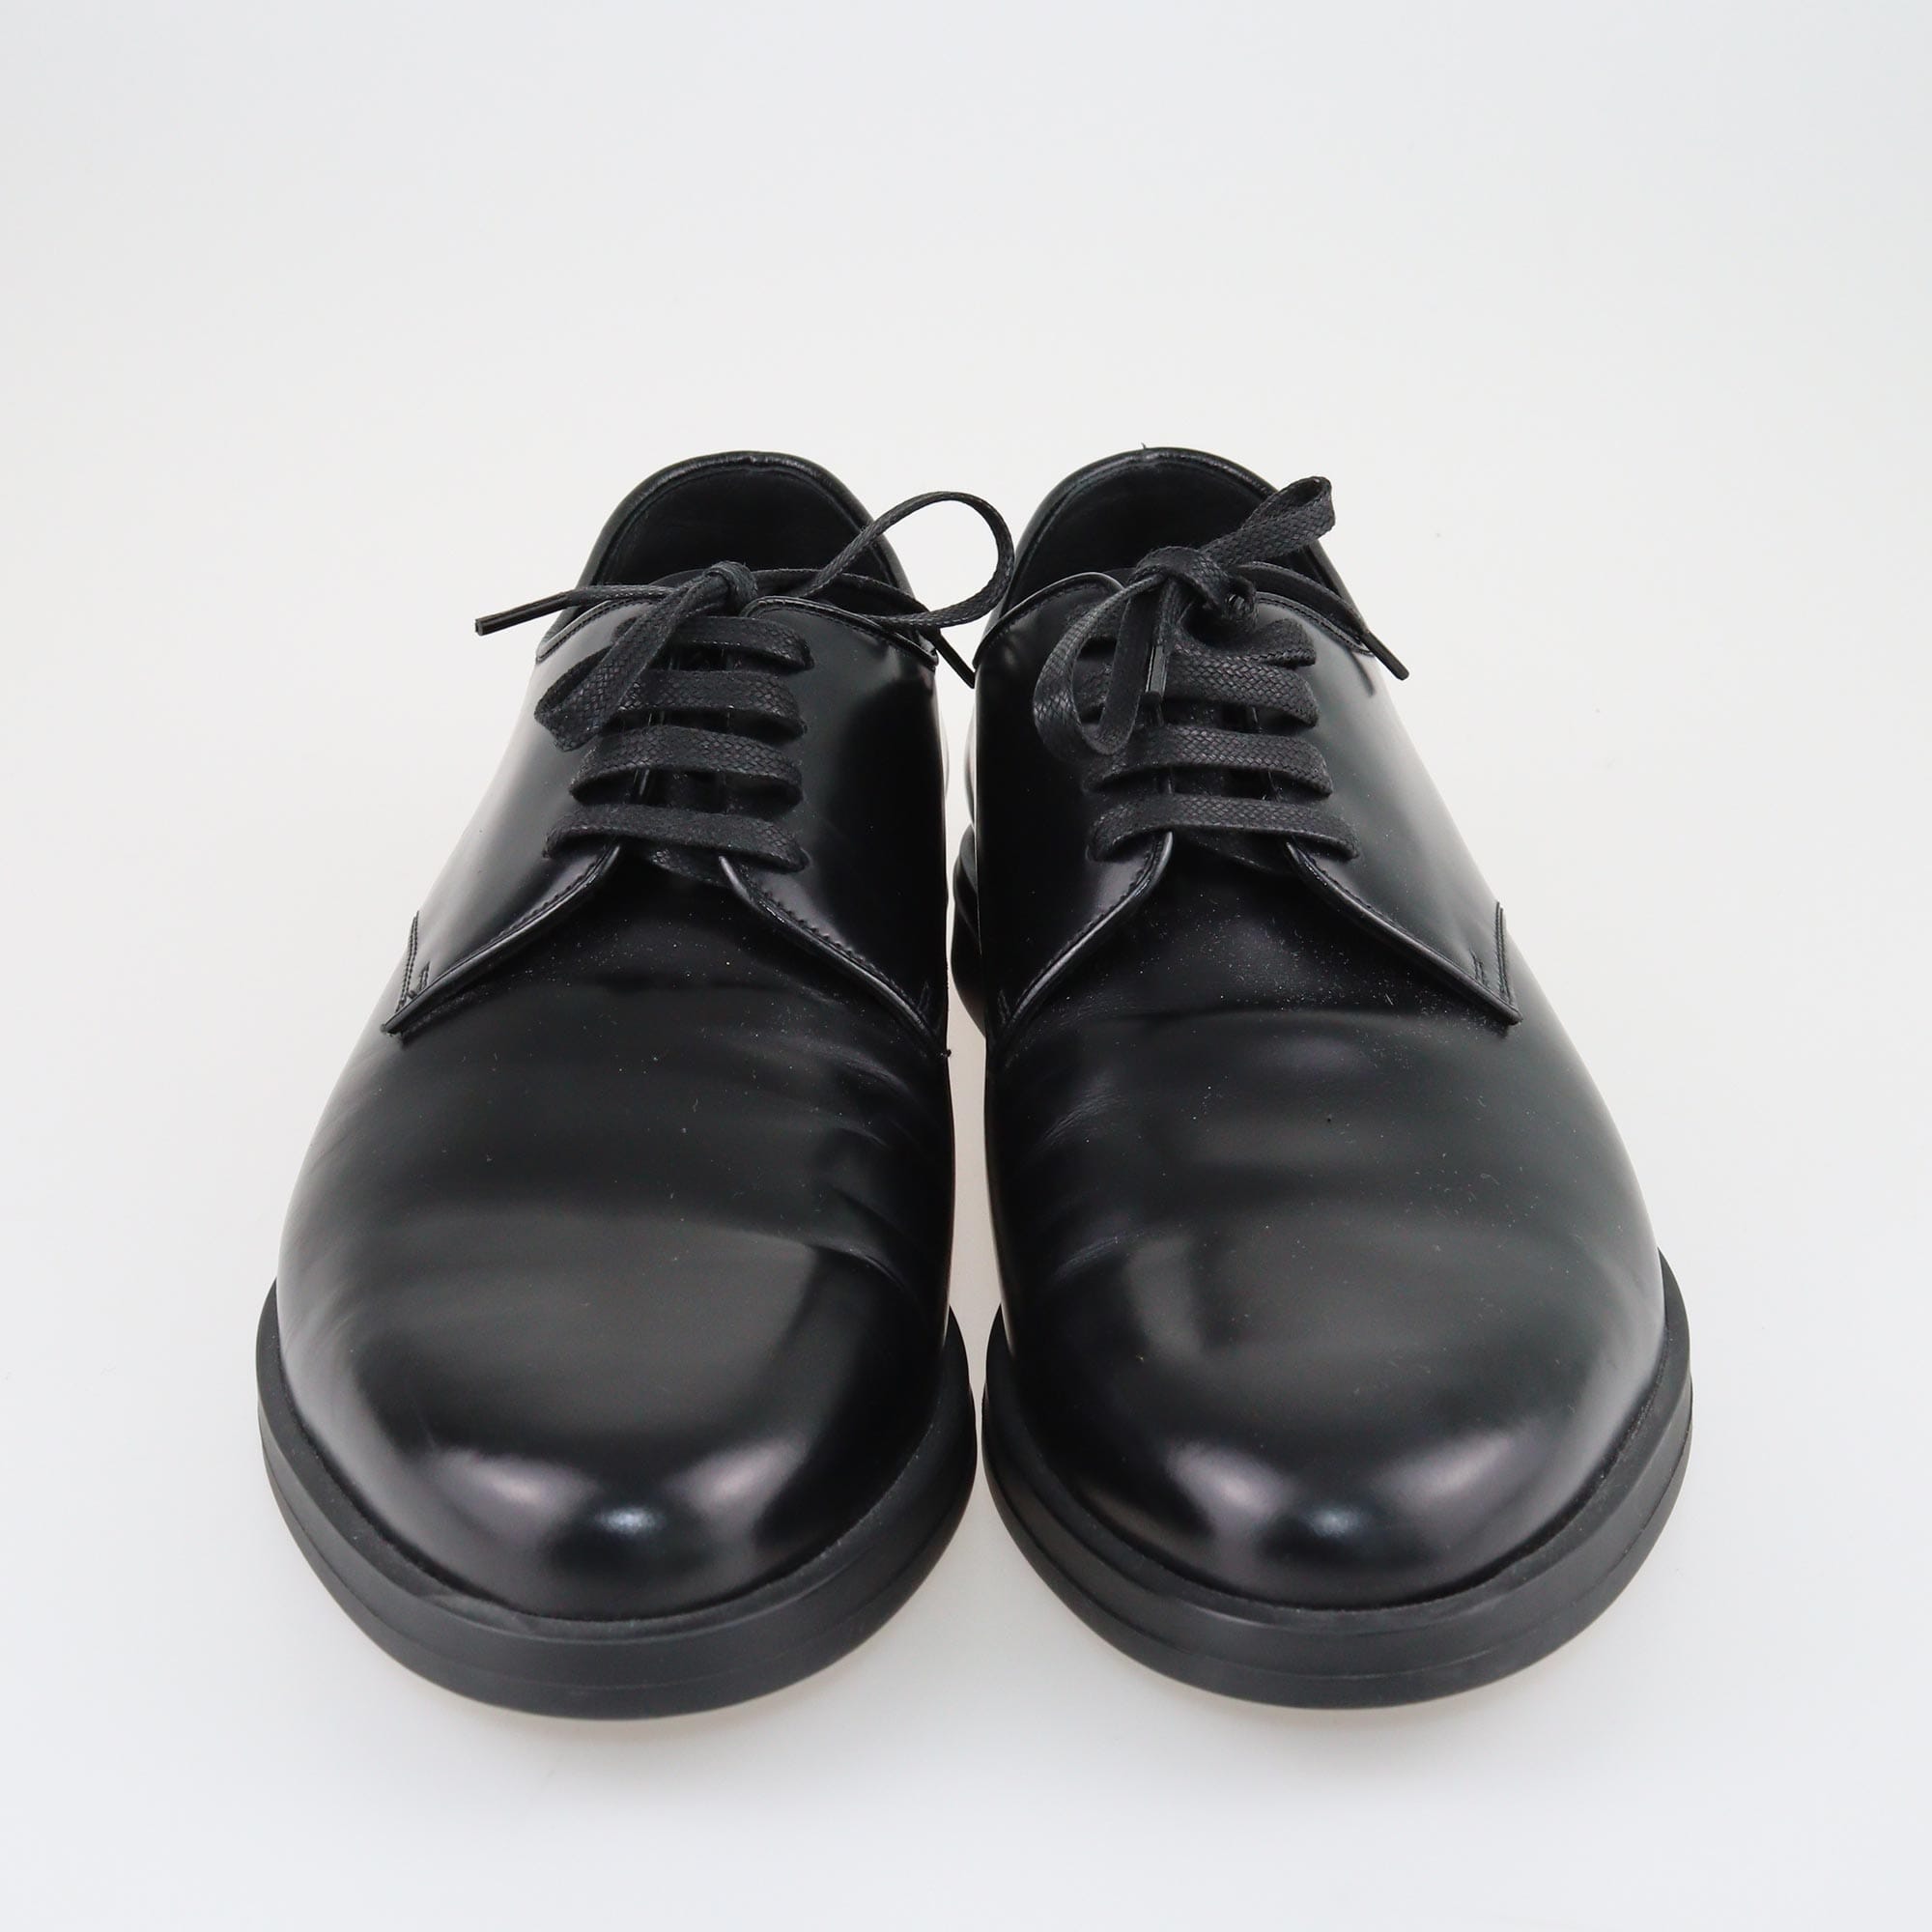 Prada Black Lace Up Flats Shoes Prada 